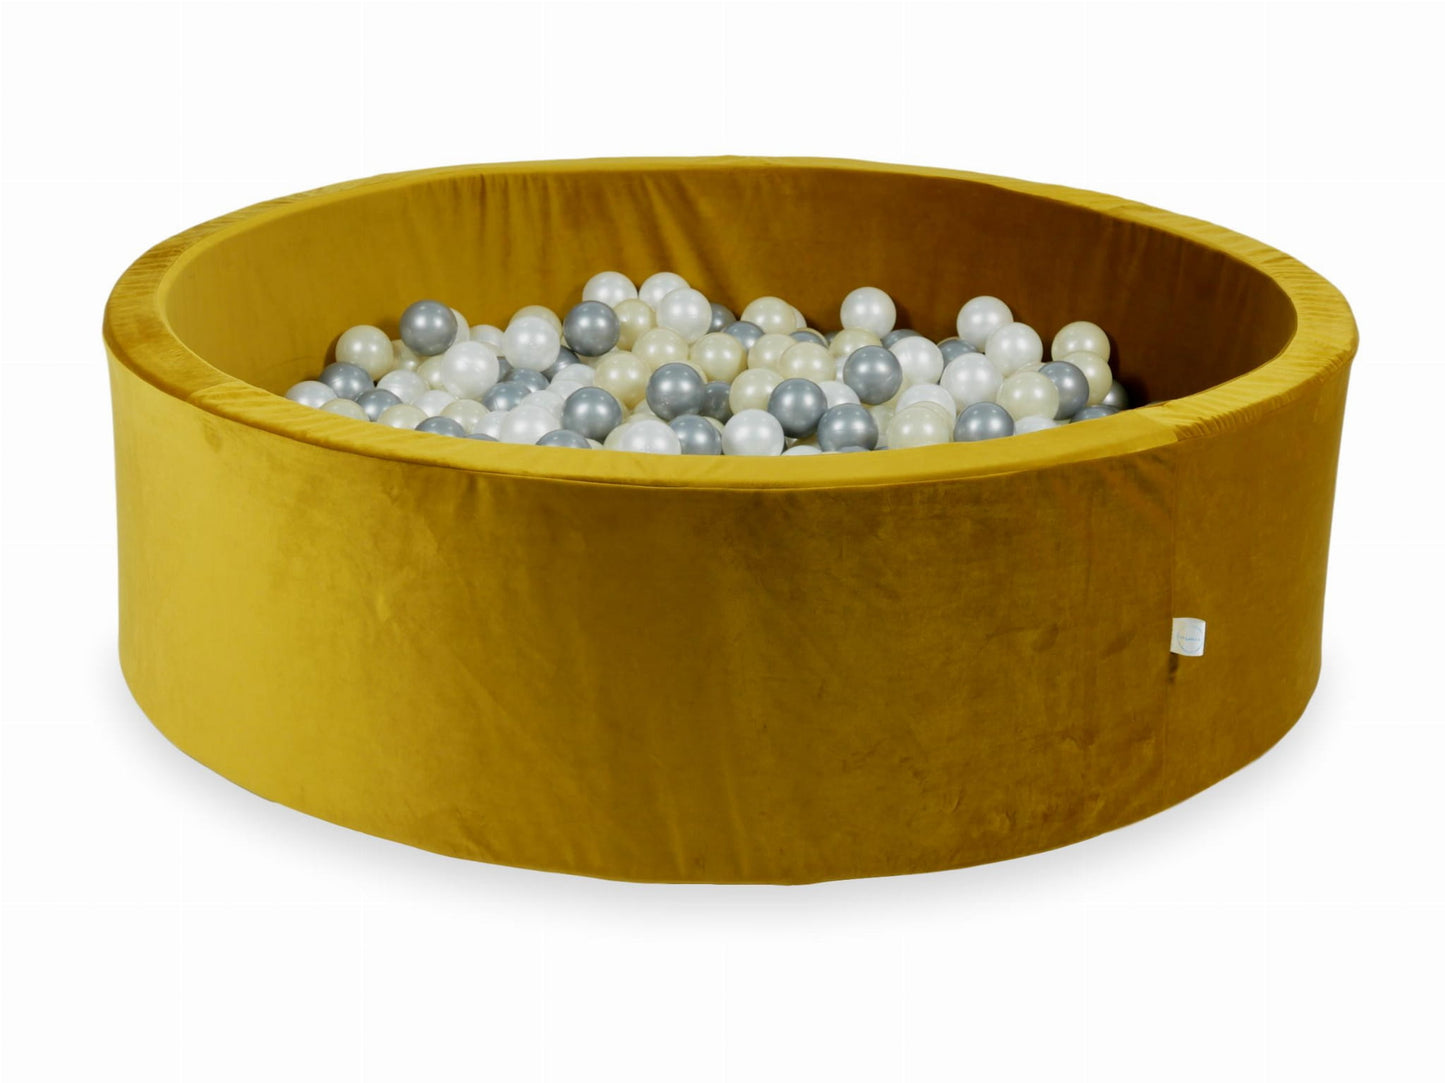 Piscine à Balles 130x40 Velvet or avec balles 700 pcs (or clair, argent, perle)